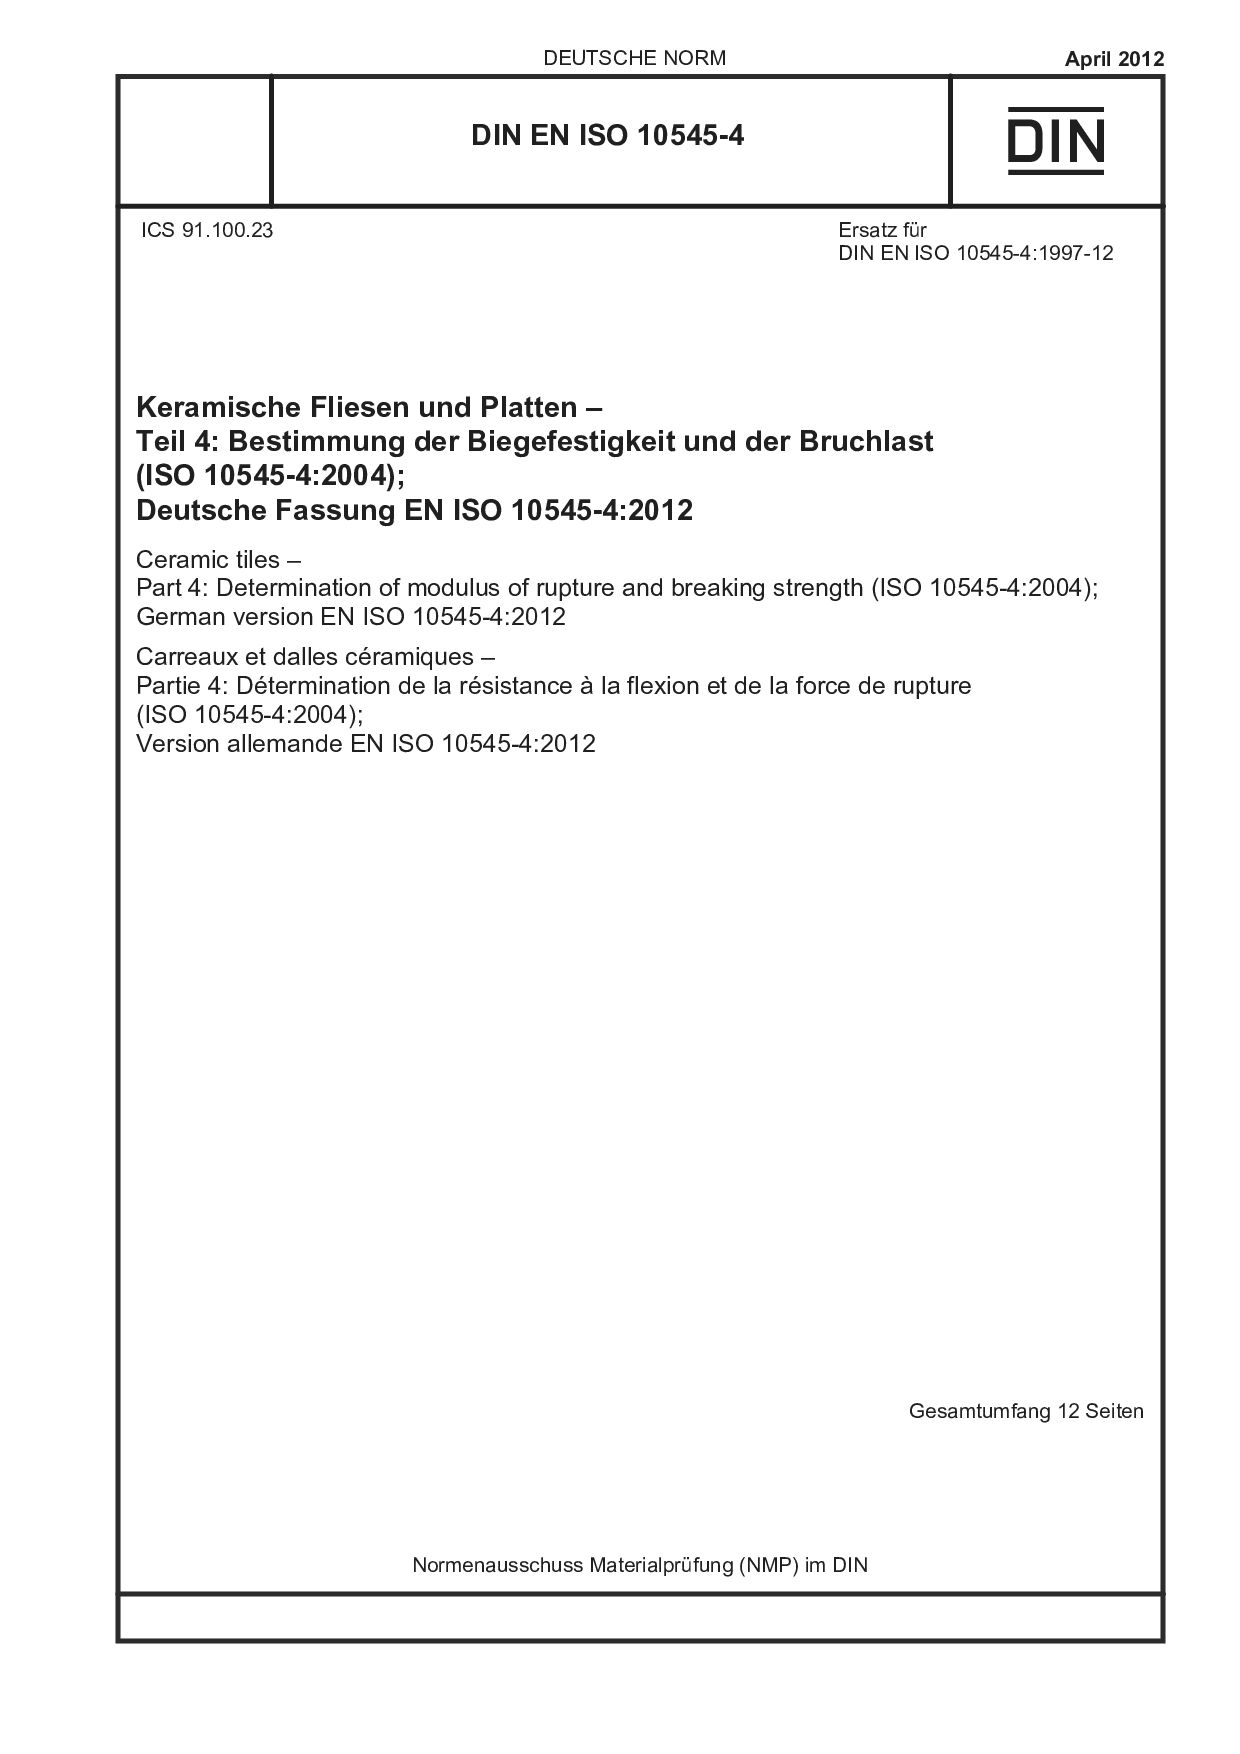 DIN EN ISO 10545-4:2012